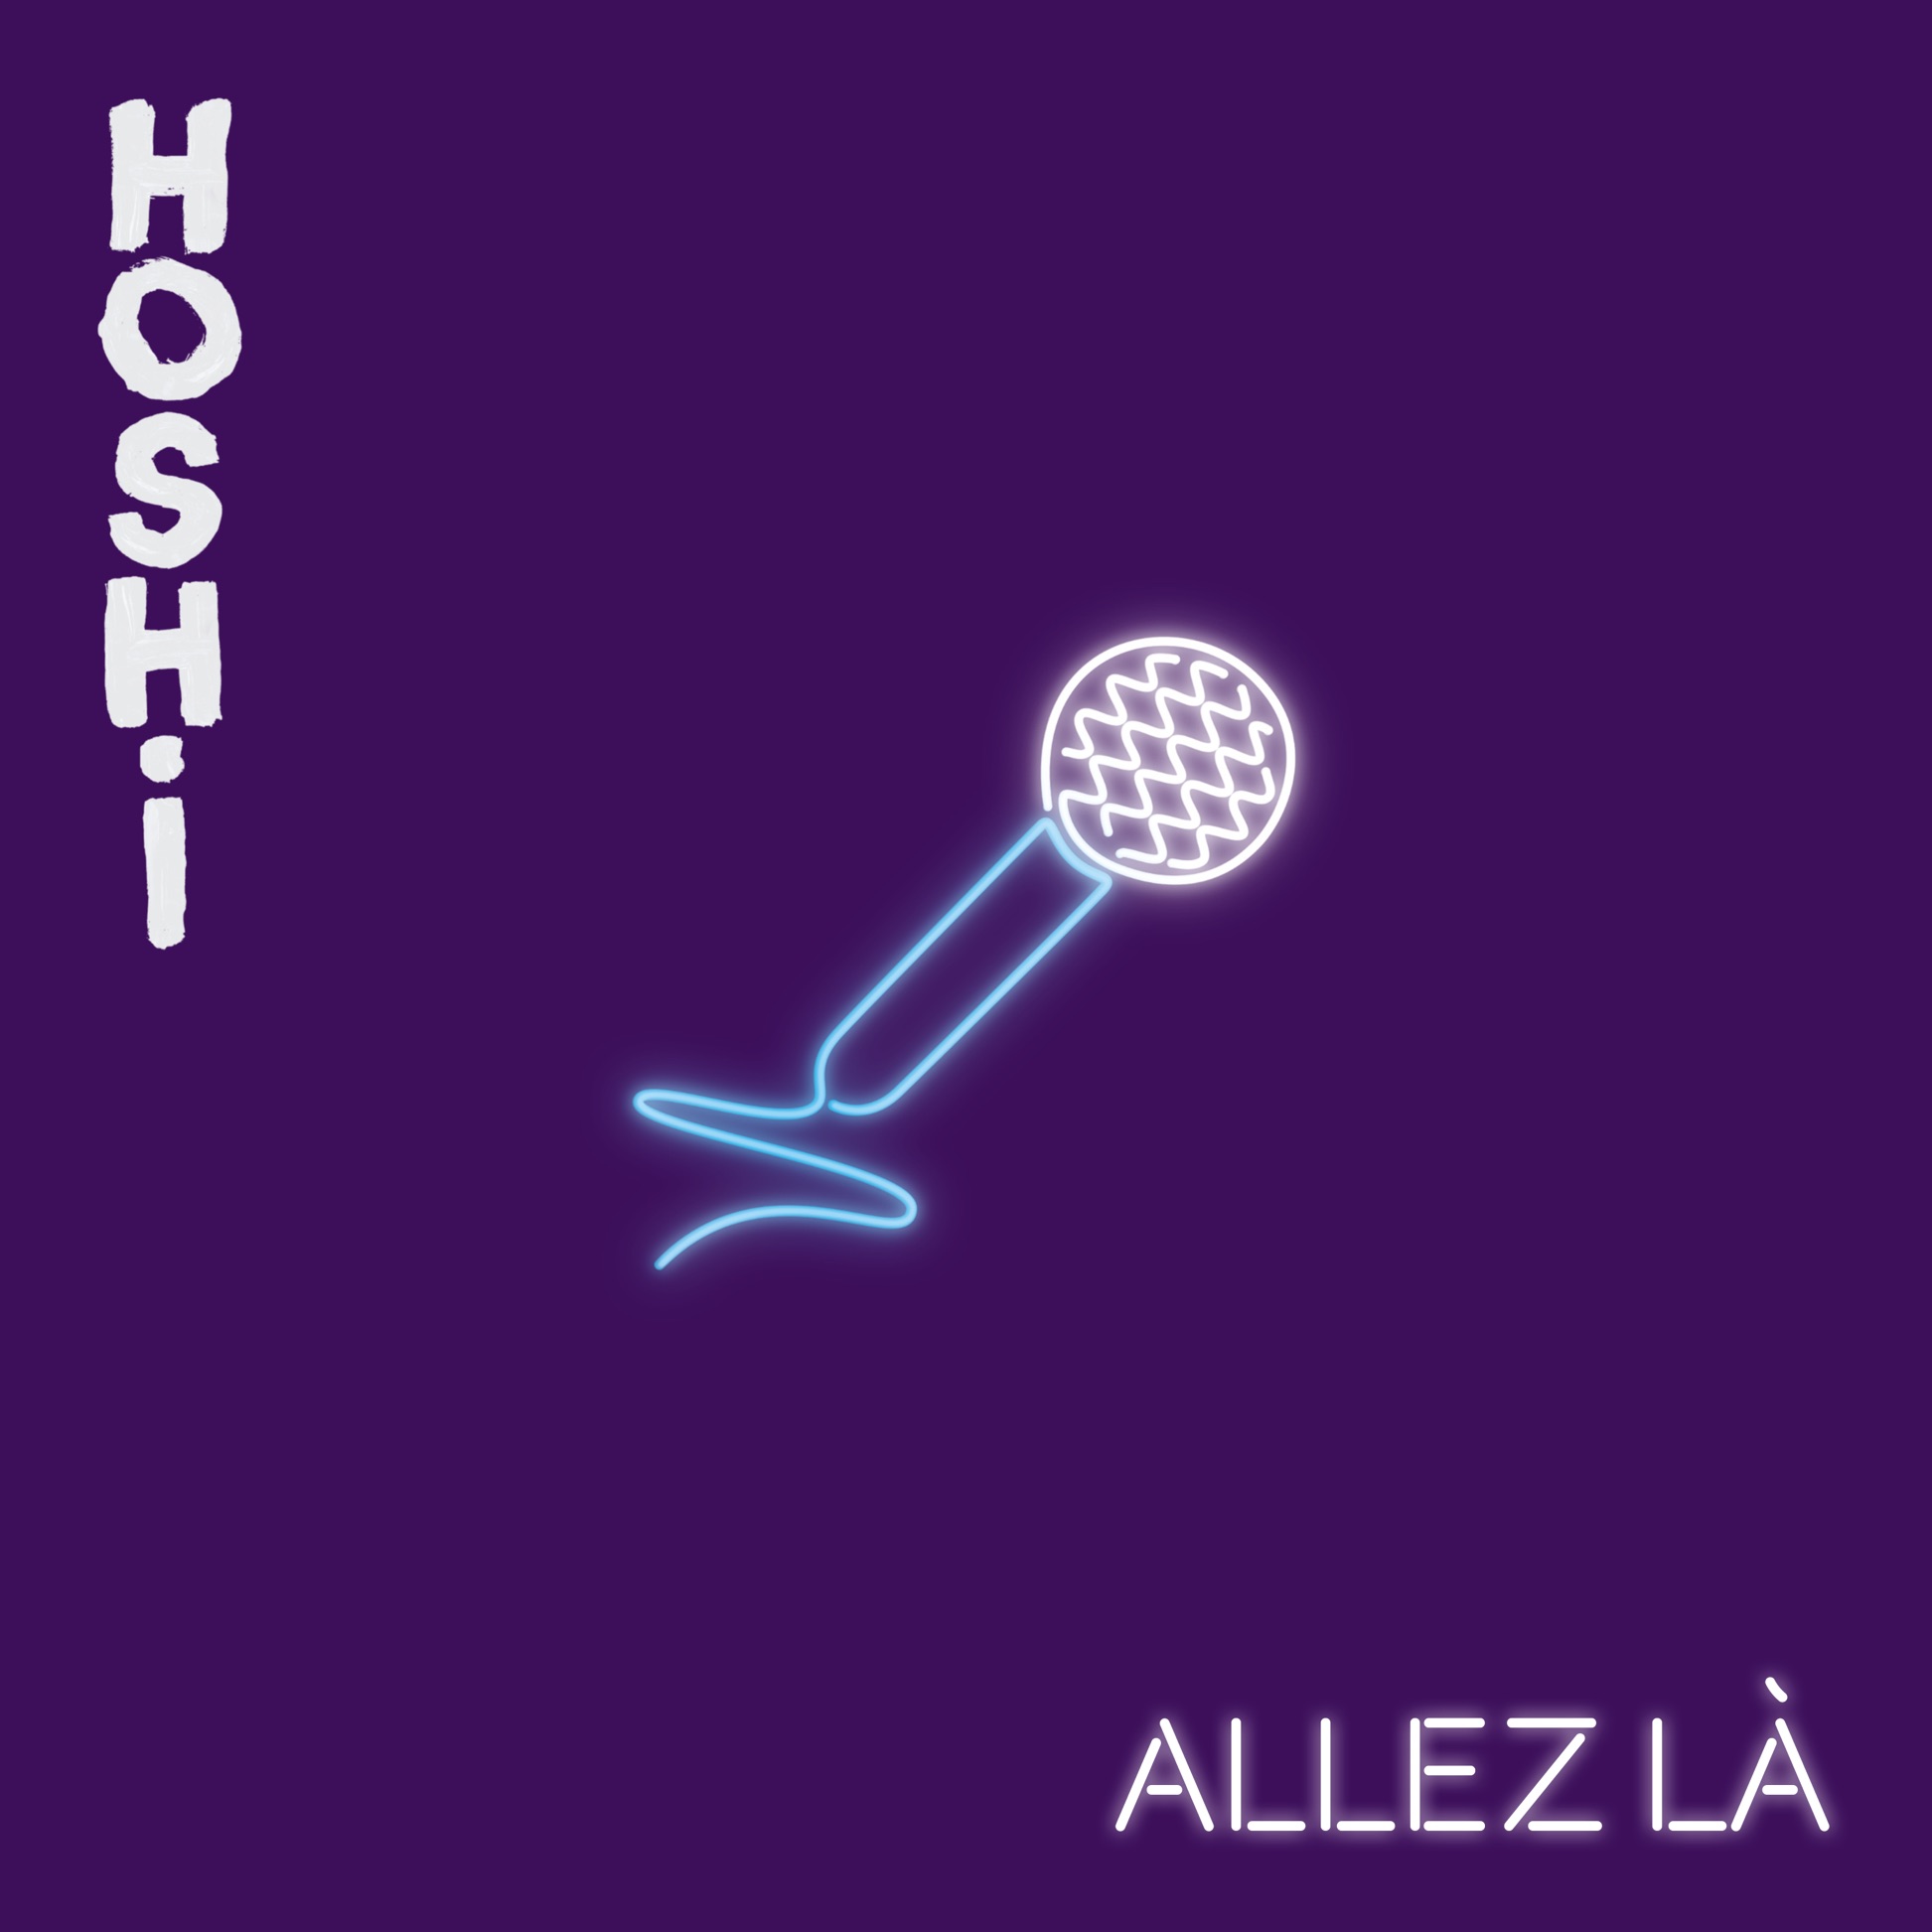 Hoshi — Allez là cover artwork